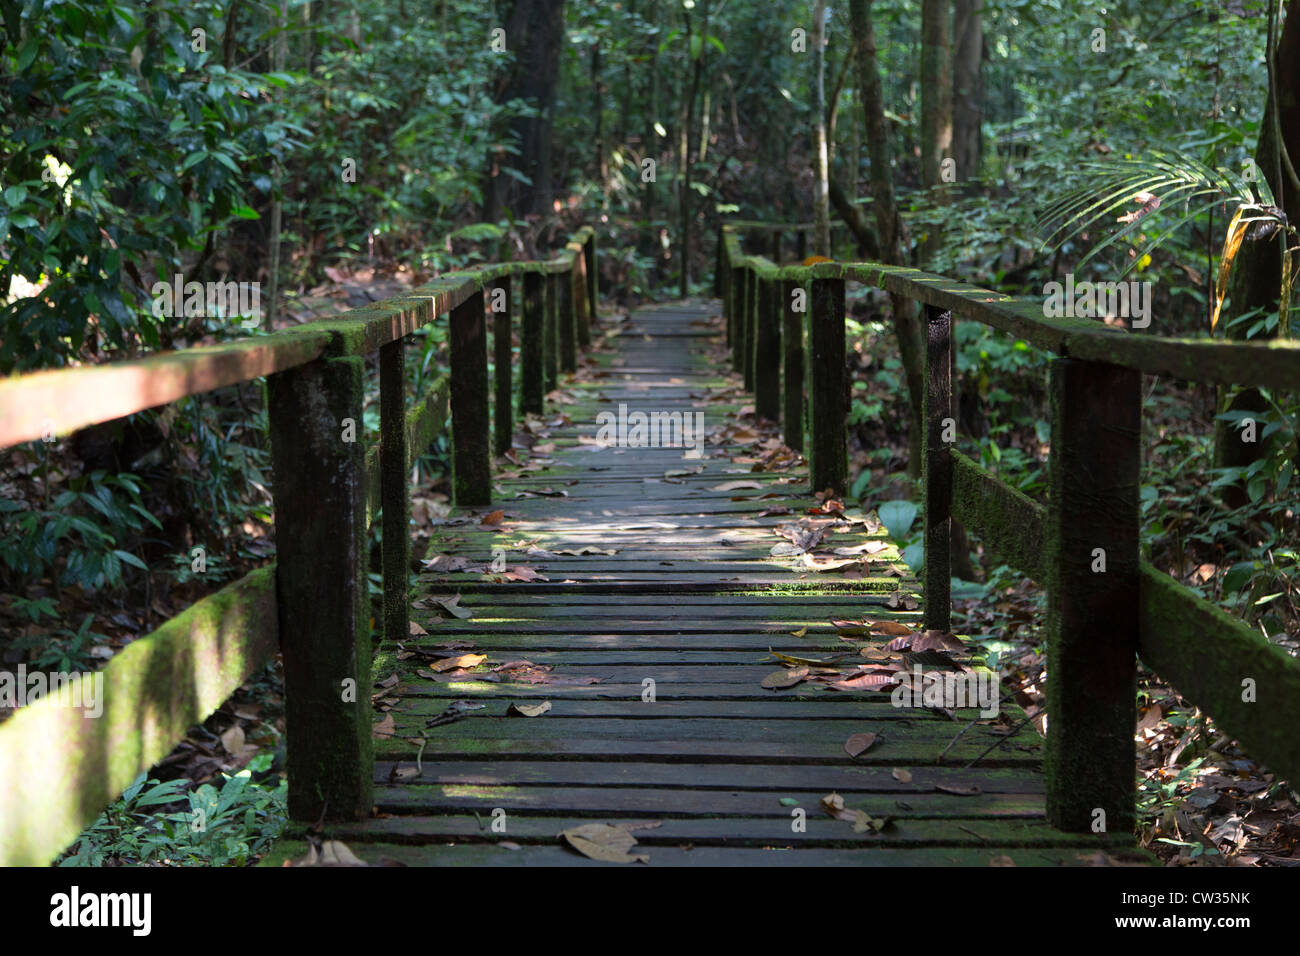 Kubah parco nazionale vicino a Kuching, Sarawak, Borneo, Malaysia Foto Stock